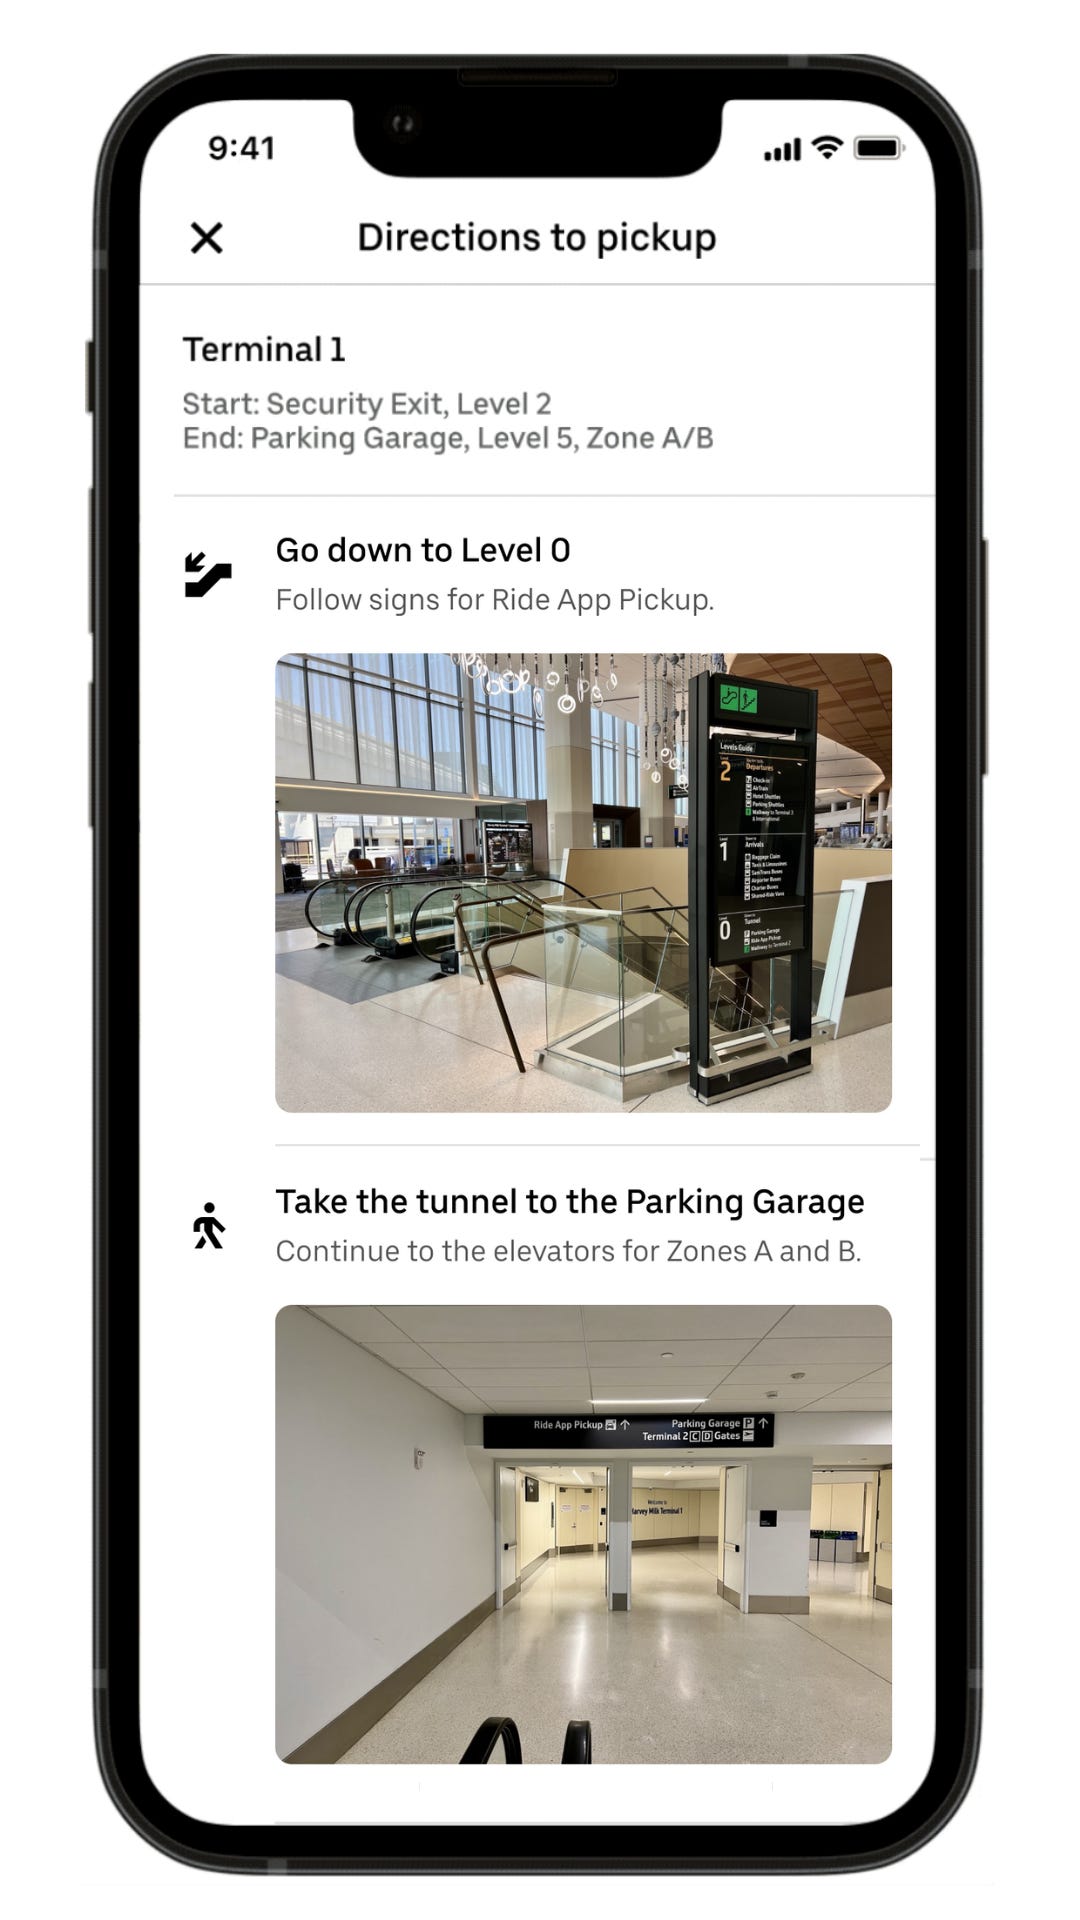 Ảnh chụp màn hình hướng dẫn từng bước bằng ảnh trong ứng dụng của Uber, đưa người dùng từ cổng sân bay ra khu vực đón khách bên ngoài.